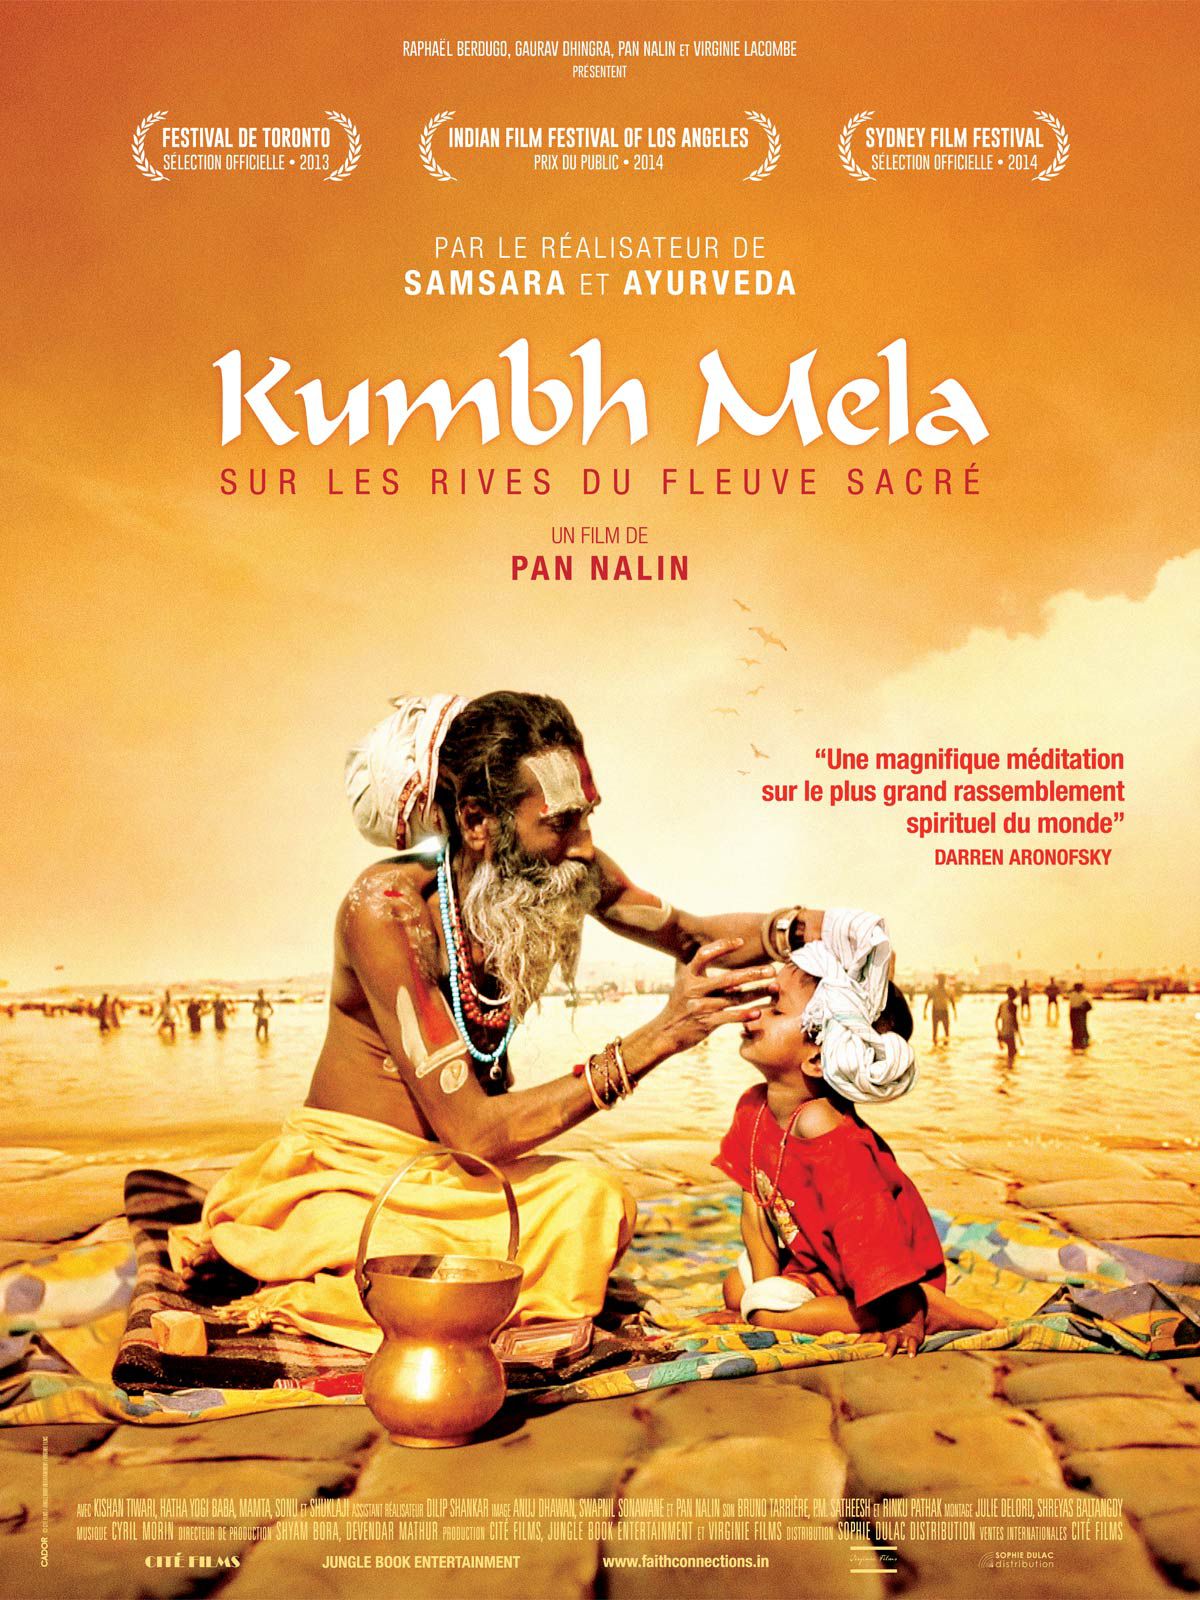 Kumbh Mela, sur les rives du fleuve sacré - Documentaire (2013) streaming VF gratuit complet